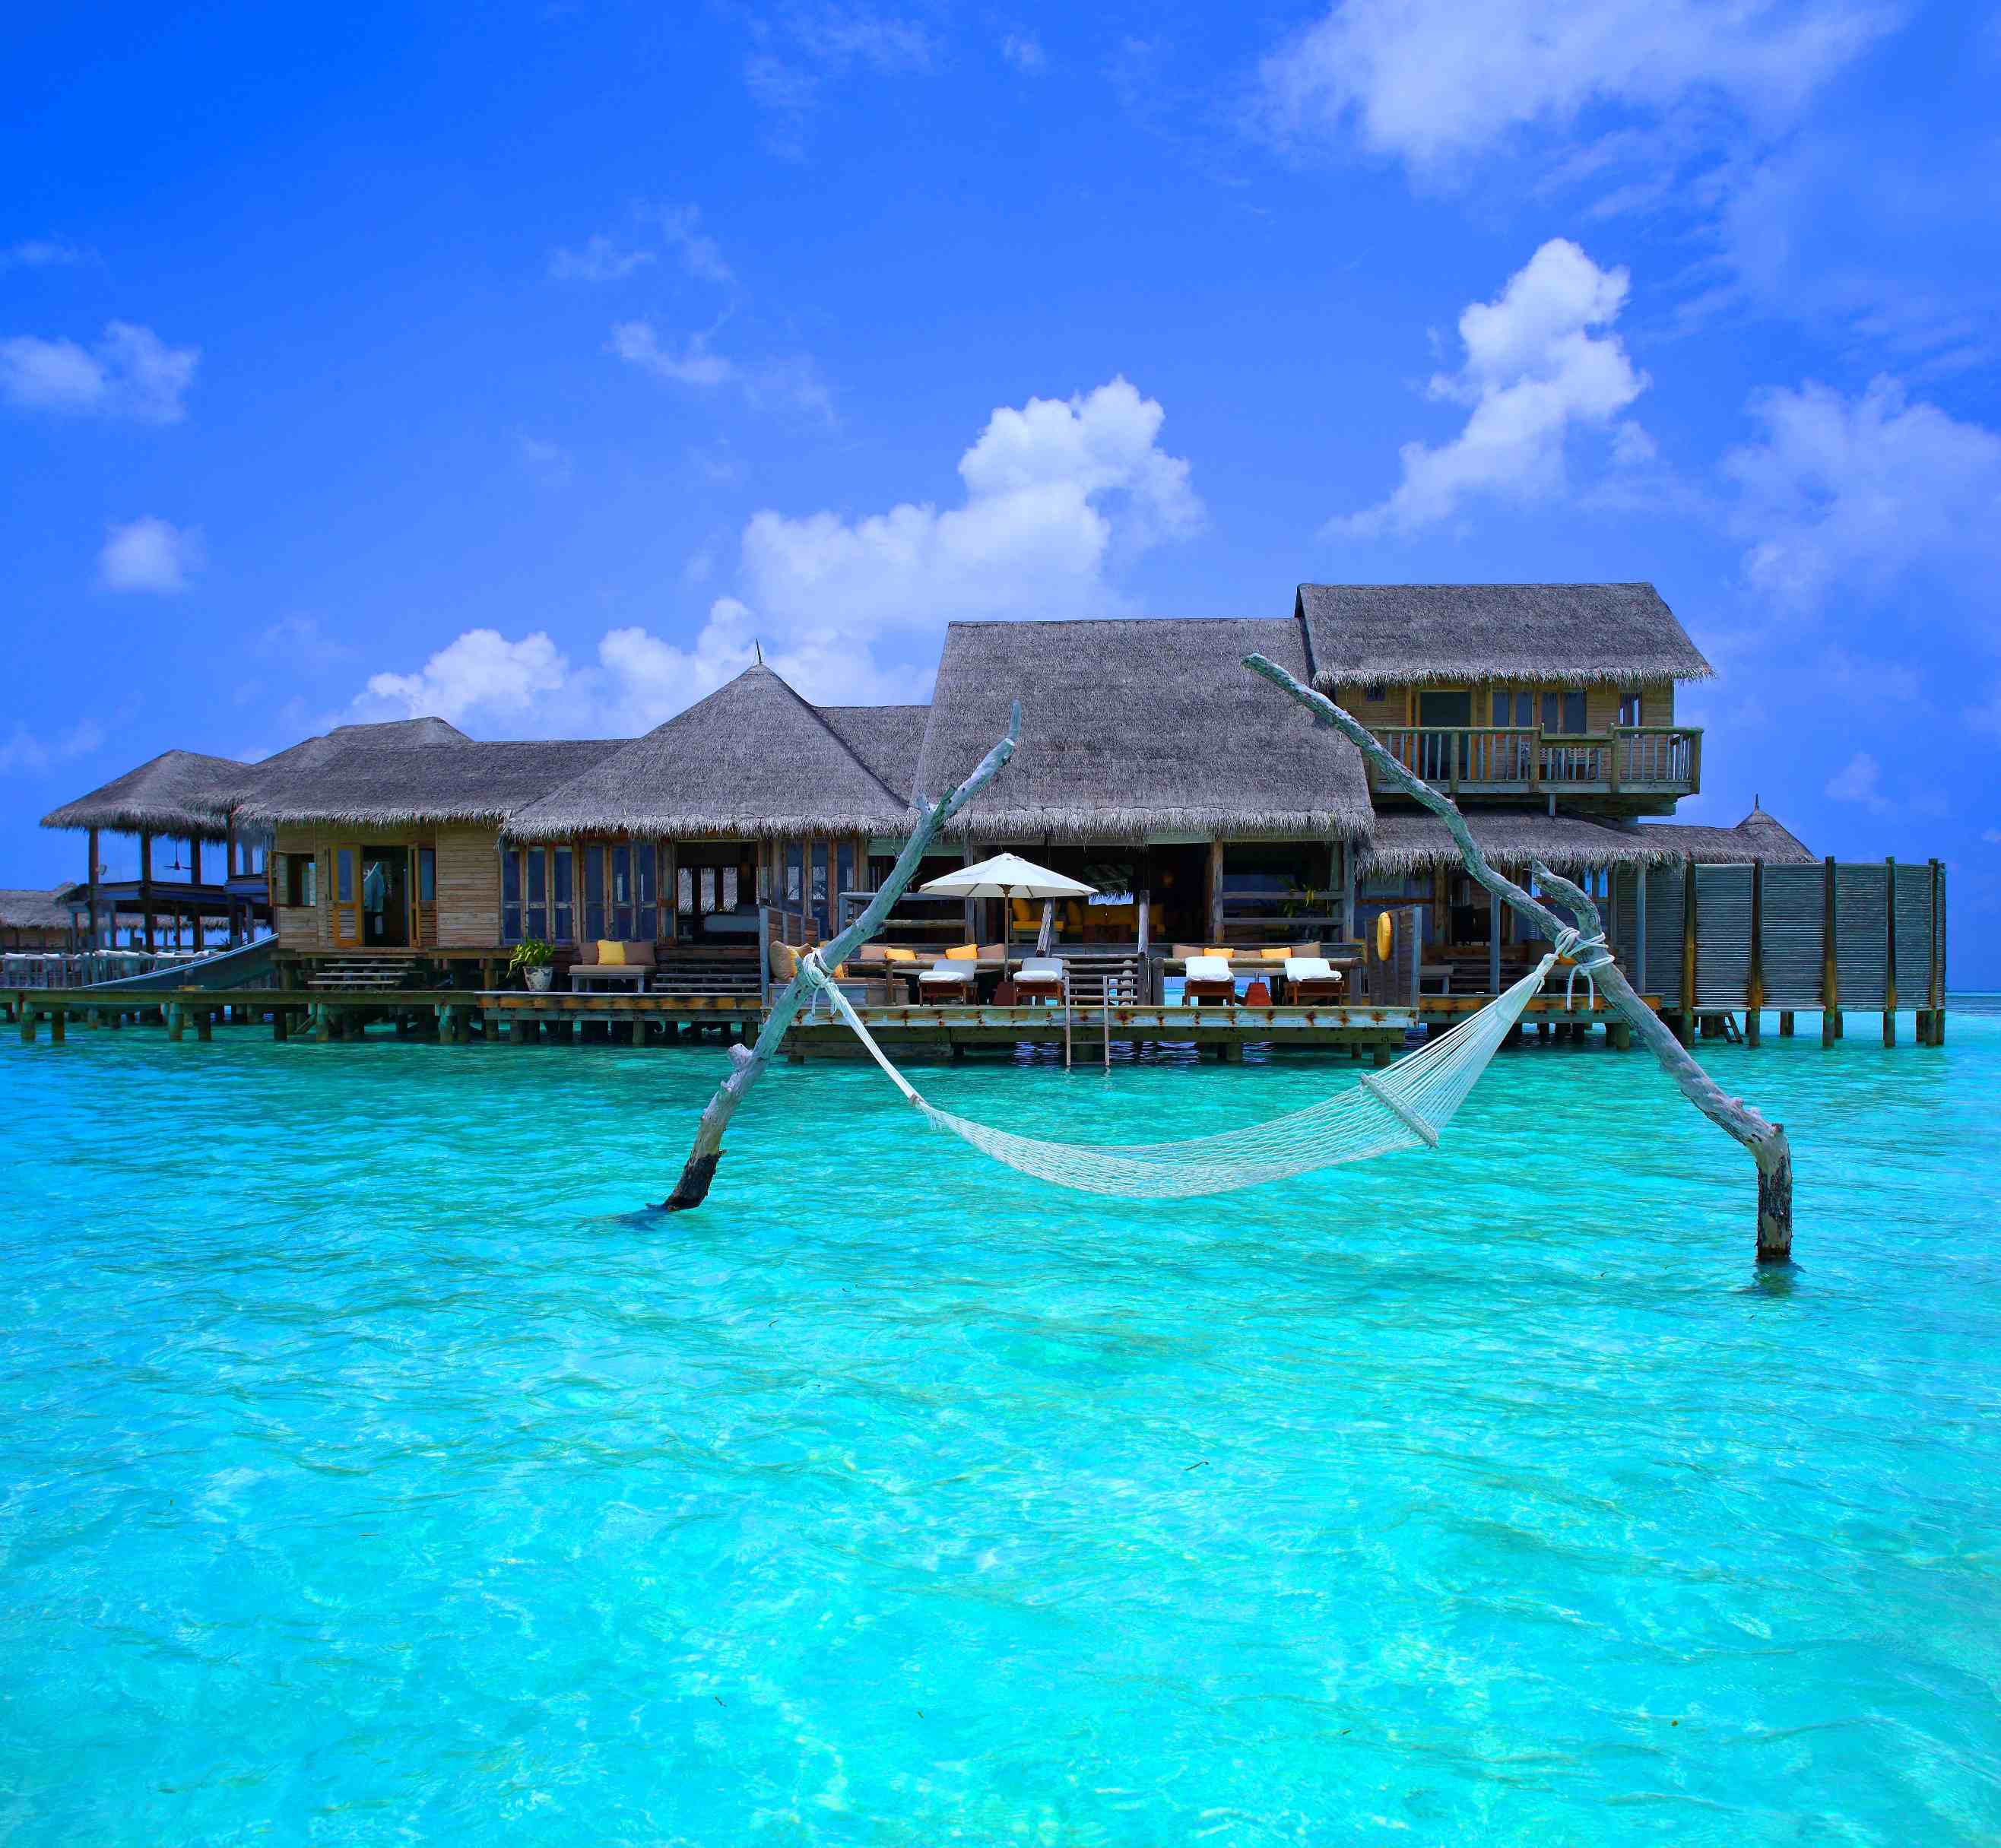 马尔代夫最奢华最贵的9个岛是哪些岛？马尔代夫奢华岛排名-七彩假期